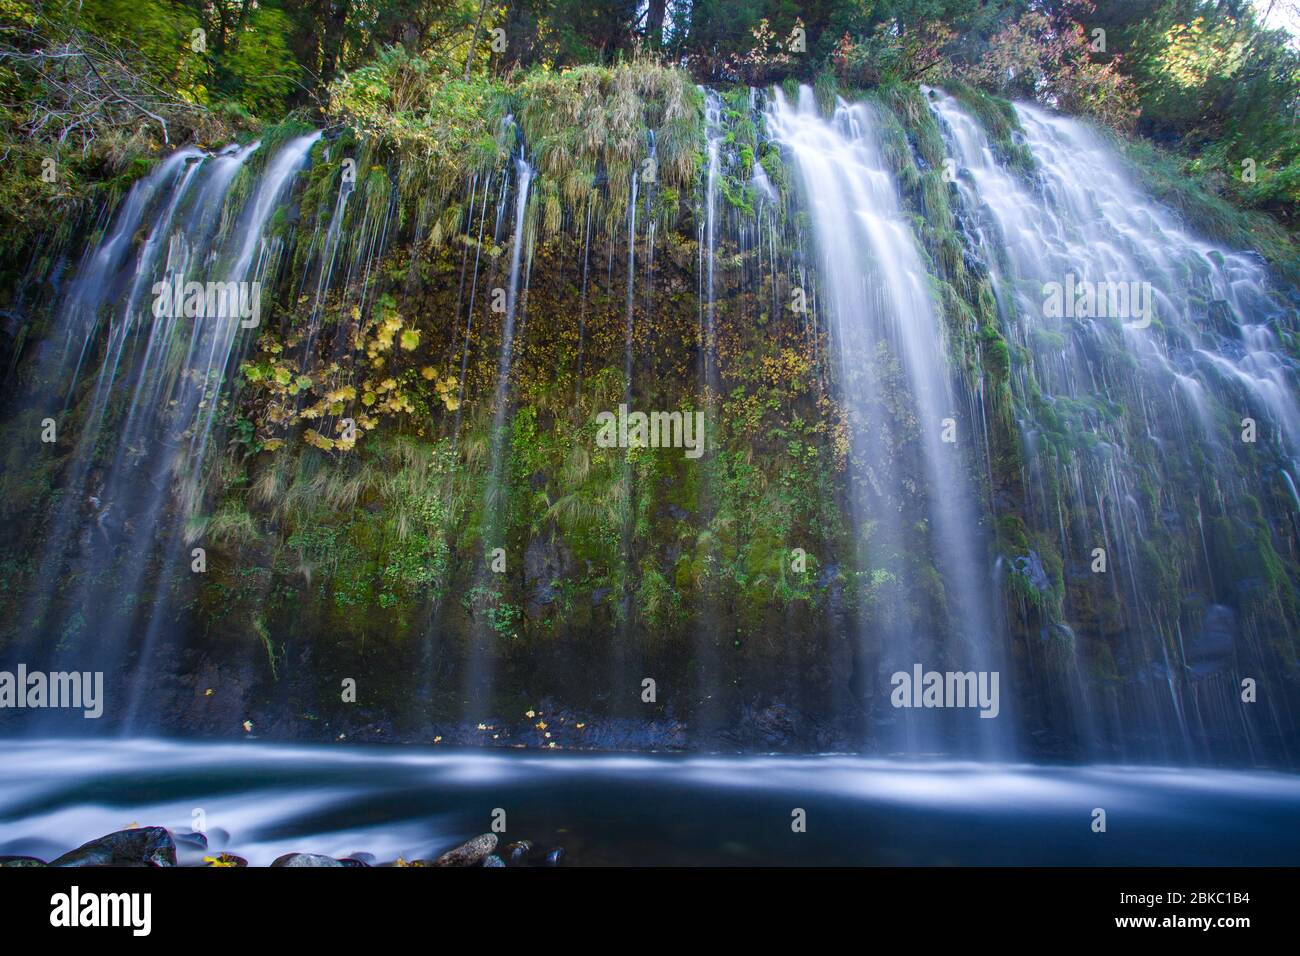 Mossbrae Falls in Dunsmuir, California Stock Photo